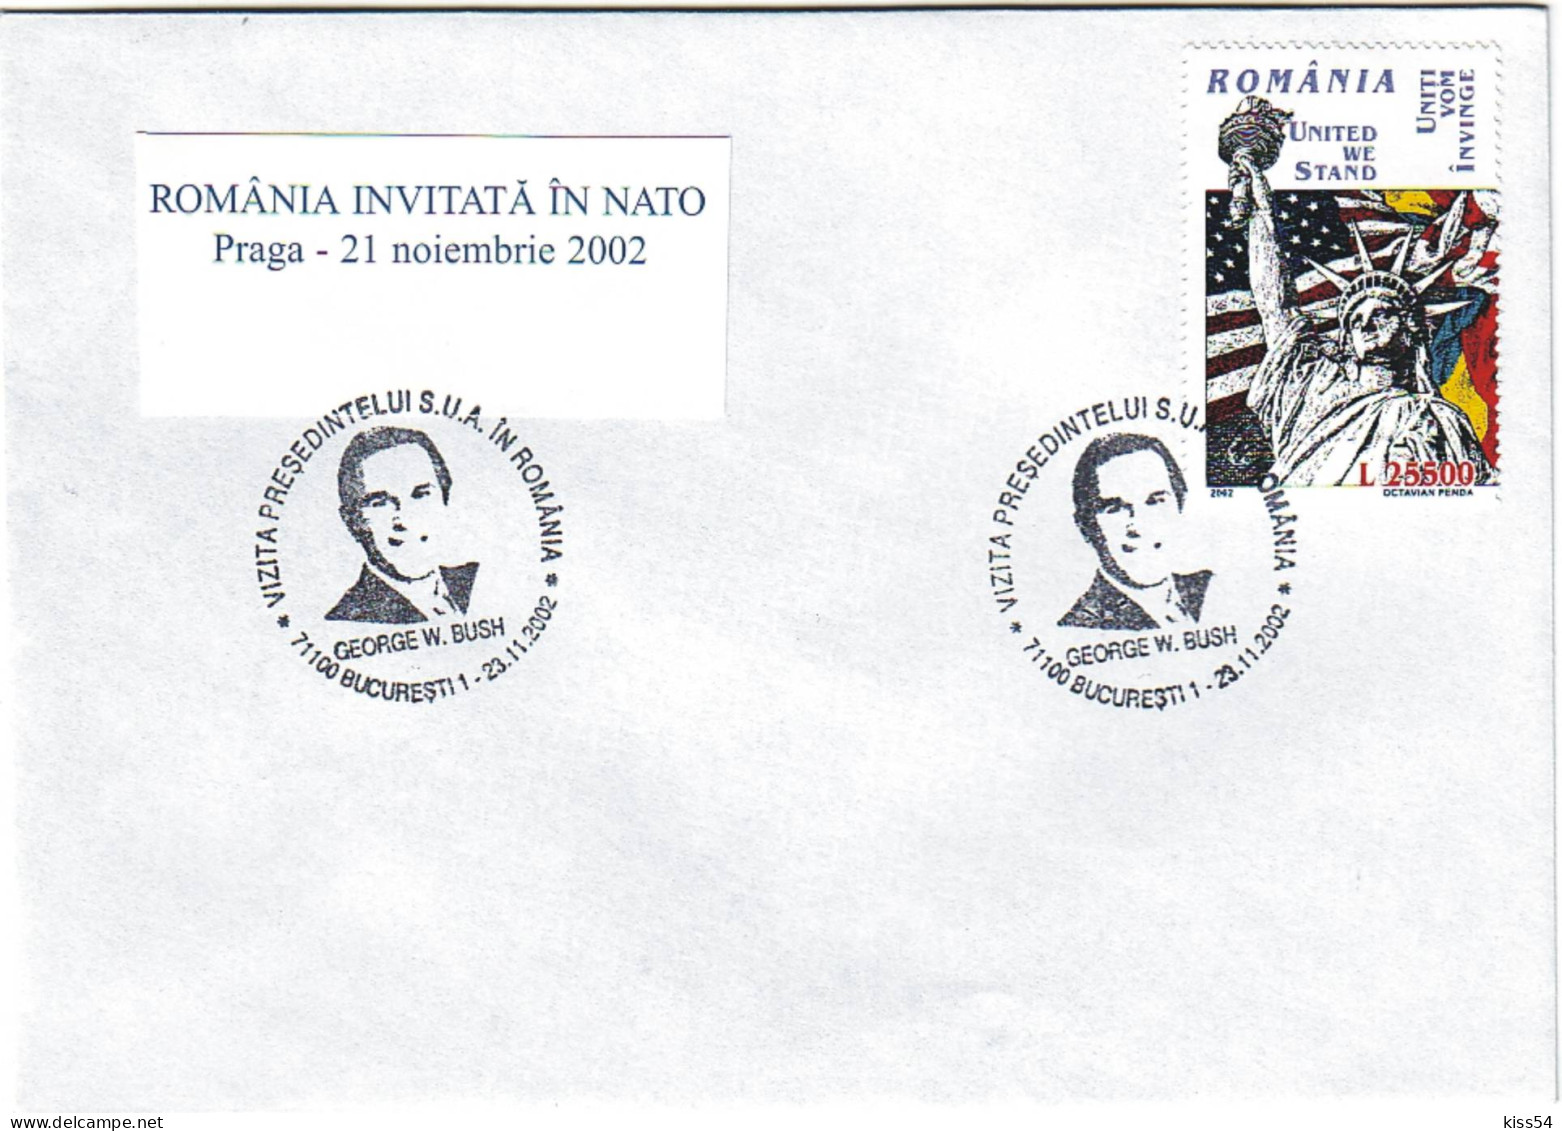 COV 25 - 503 George BUSH, Romania In NATO With The Support Of America - Cover - Used - 2002 - NATO